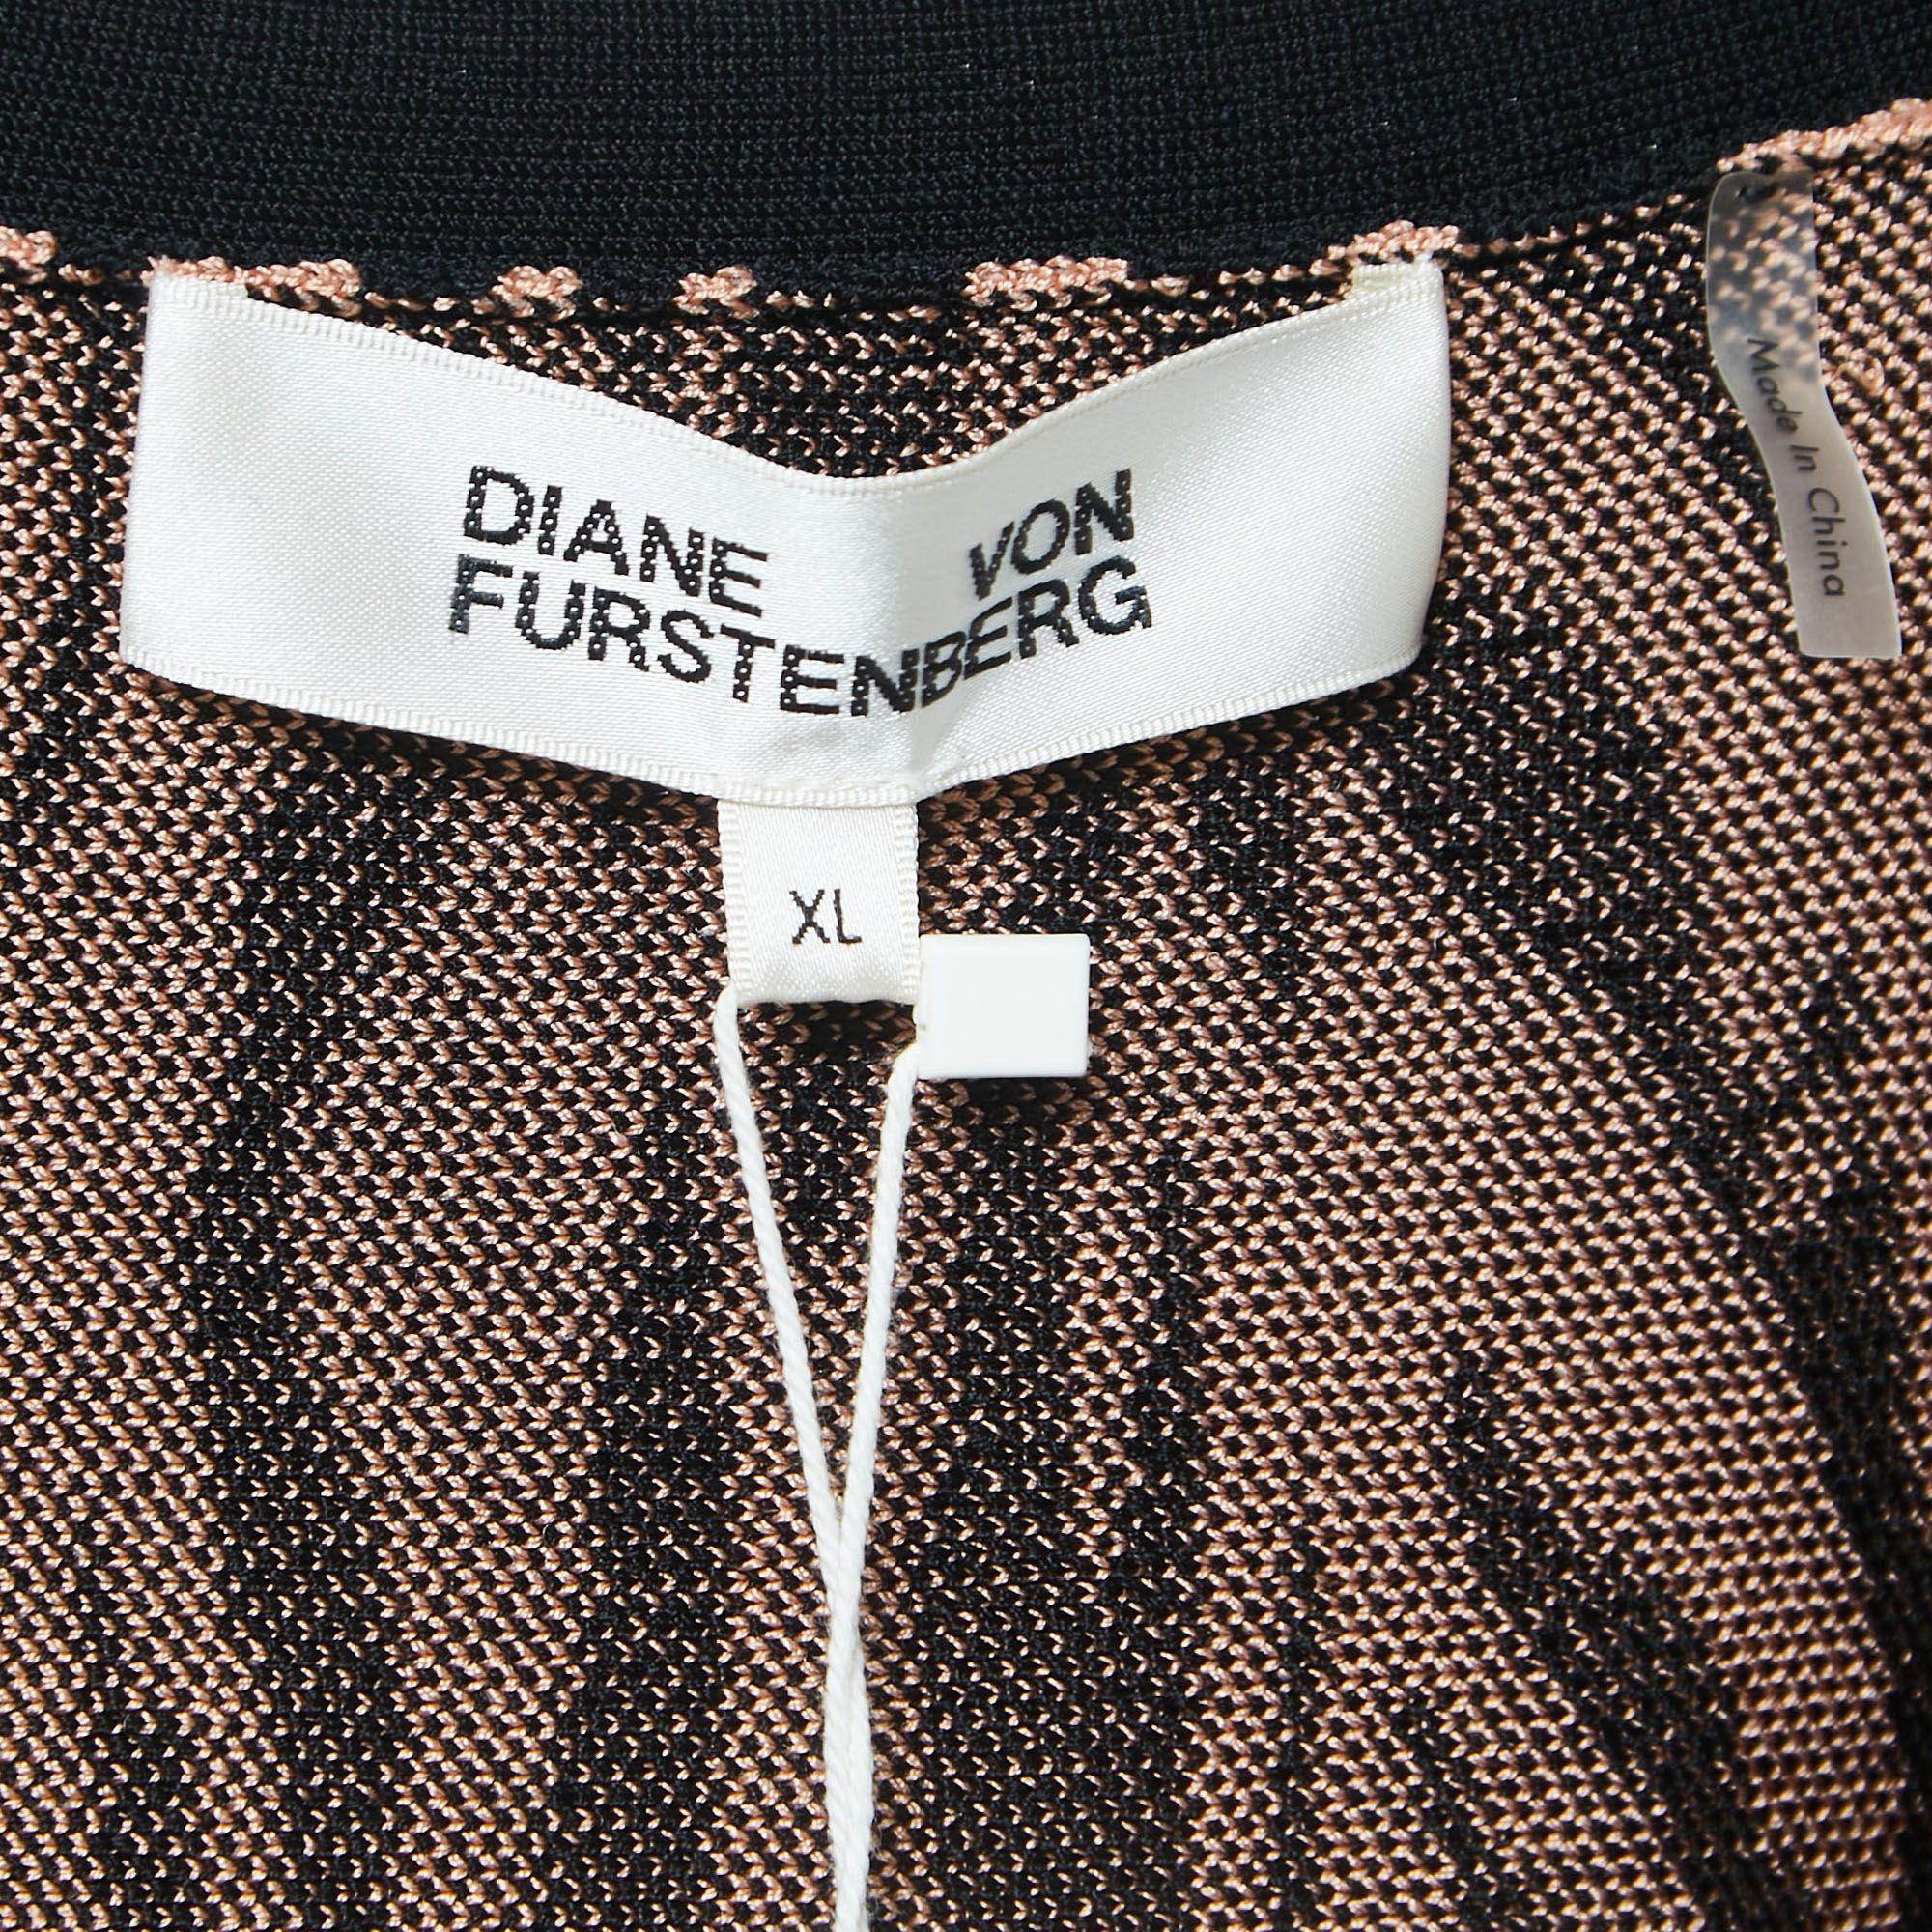 Diane Von Furstenberg Pink/Black Tiger Striped Knit Cardigan XL